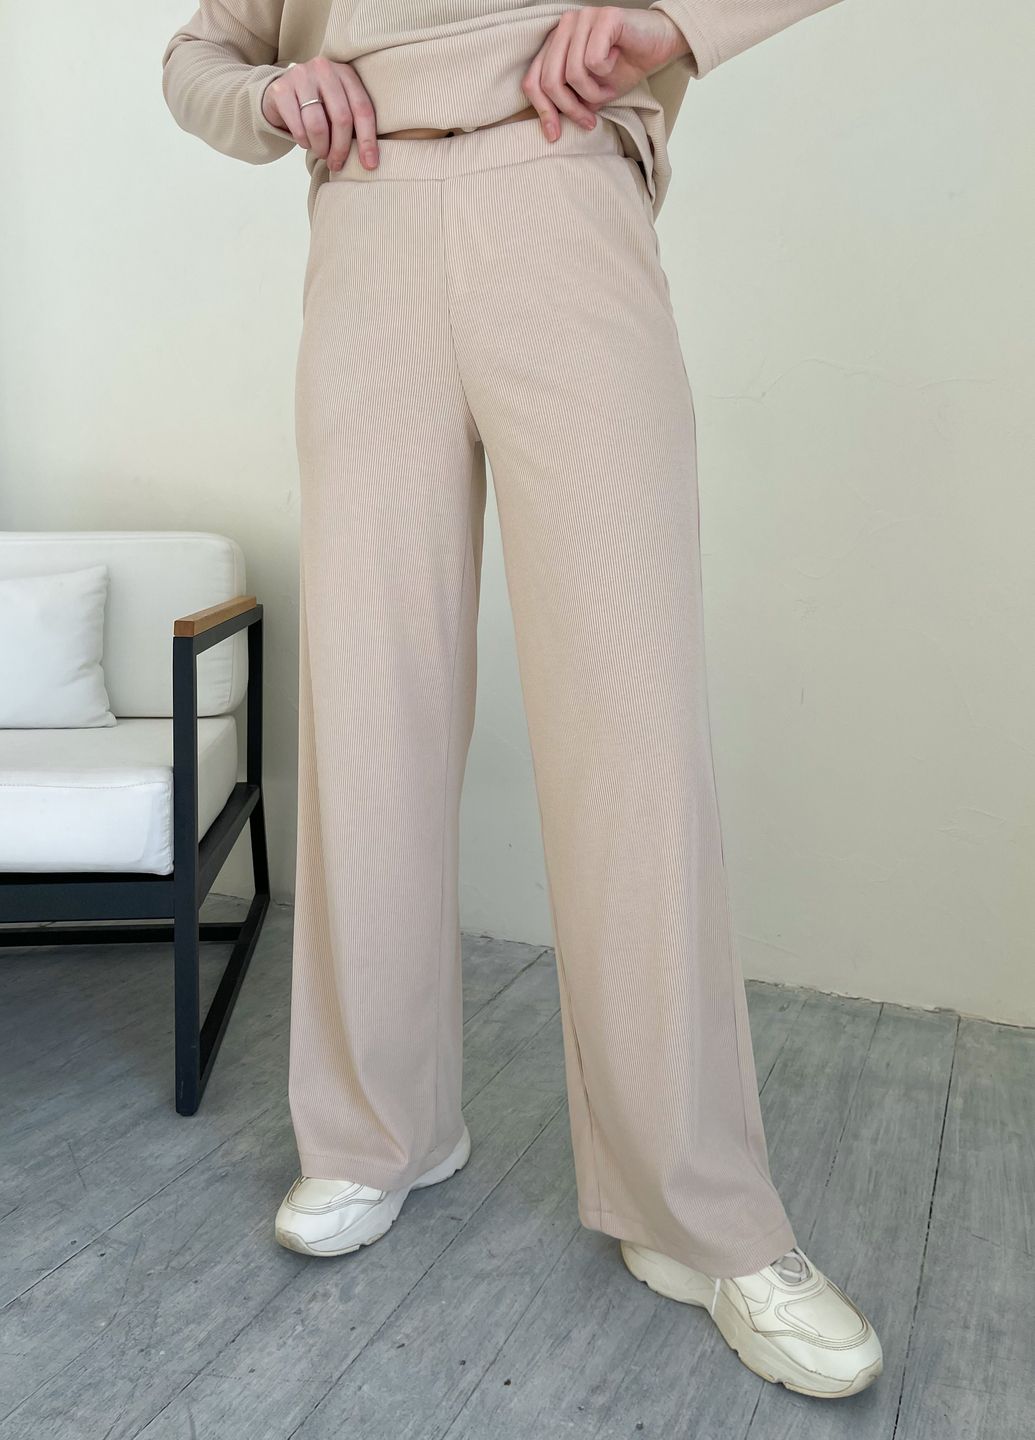 Купить Костюм женский в рубчик бежевого цвета с широкими штанами Merlini Мантуя 100000402, размер XS-M в интернет-магазине